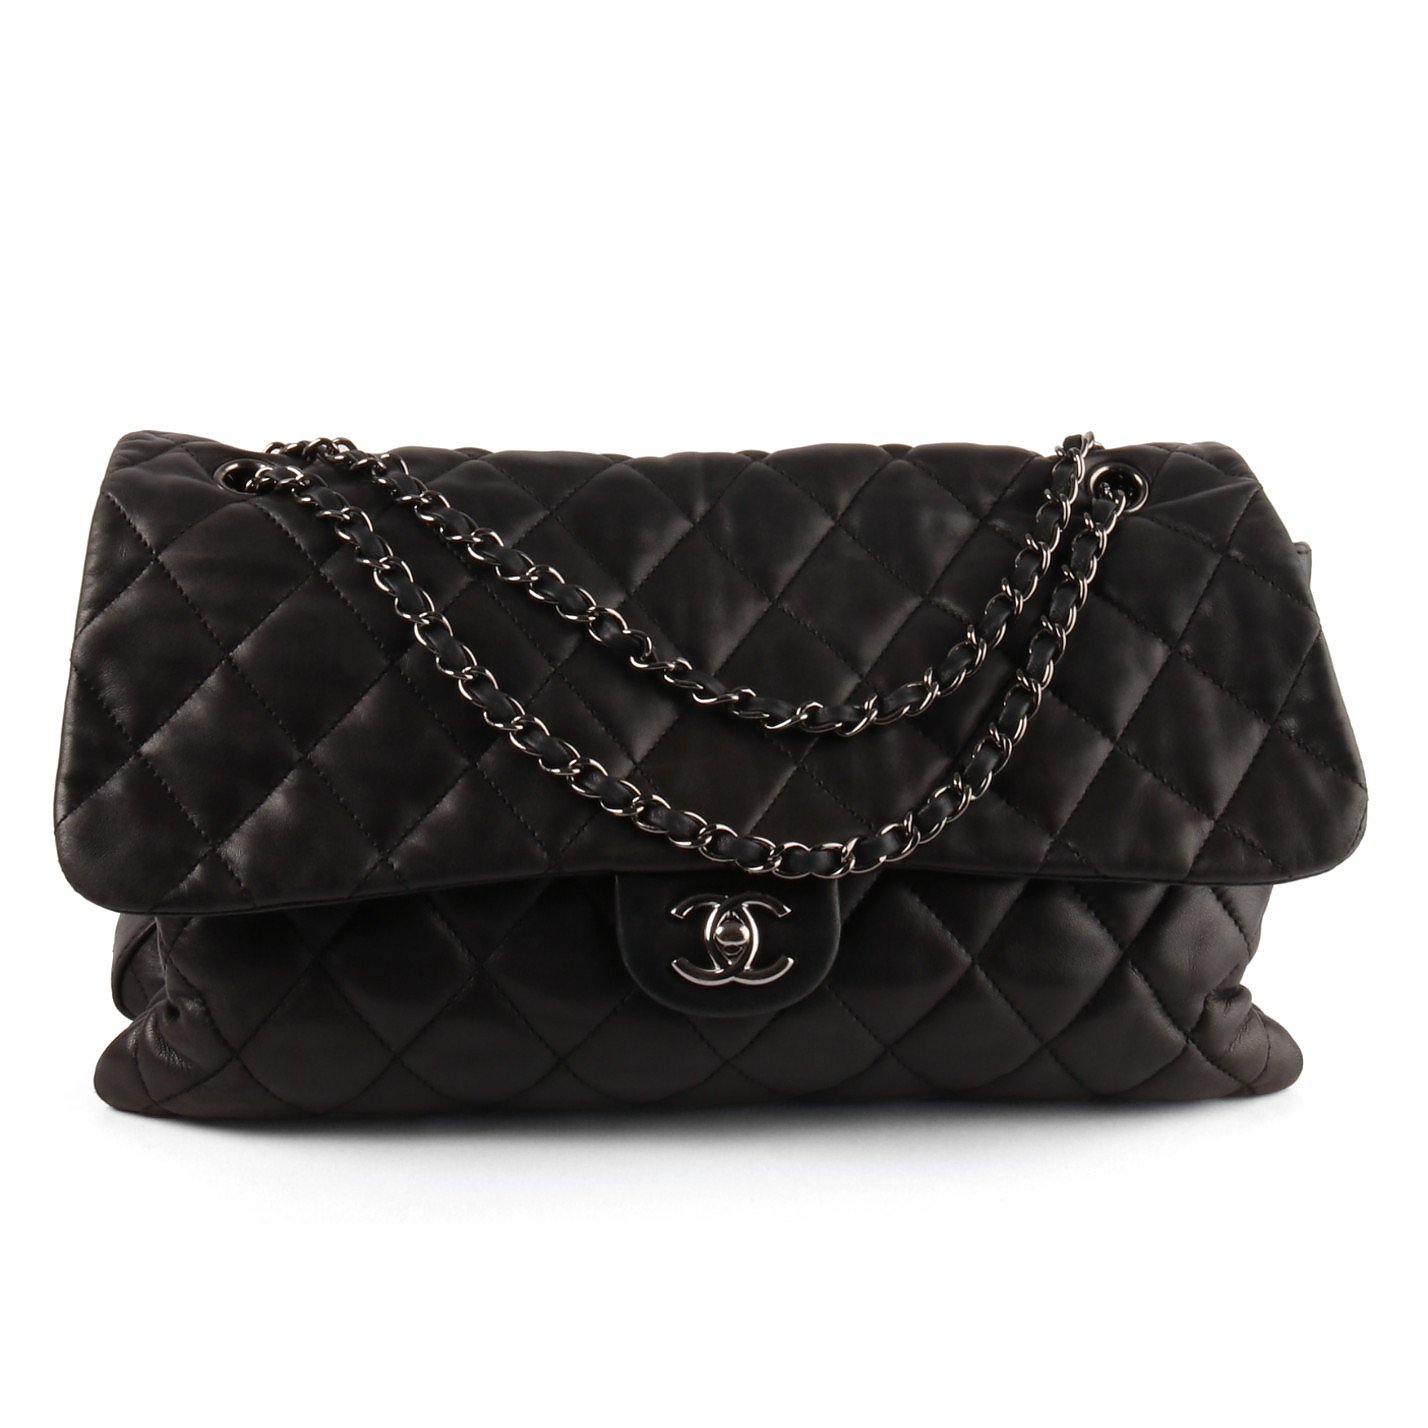 Túi Chanel 19 Flap Bag Large đen da cừu khóa bạc best quality 30cm